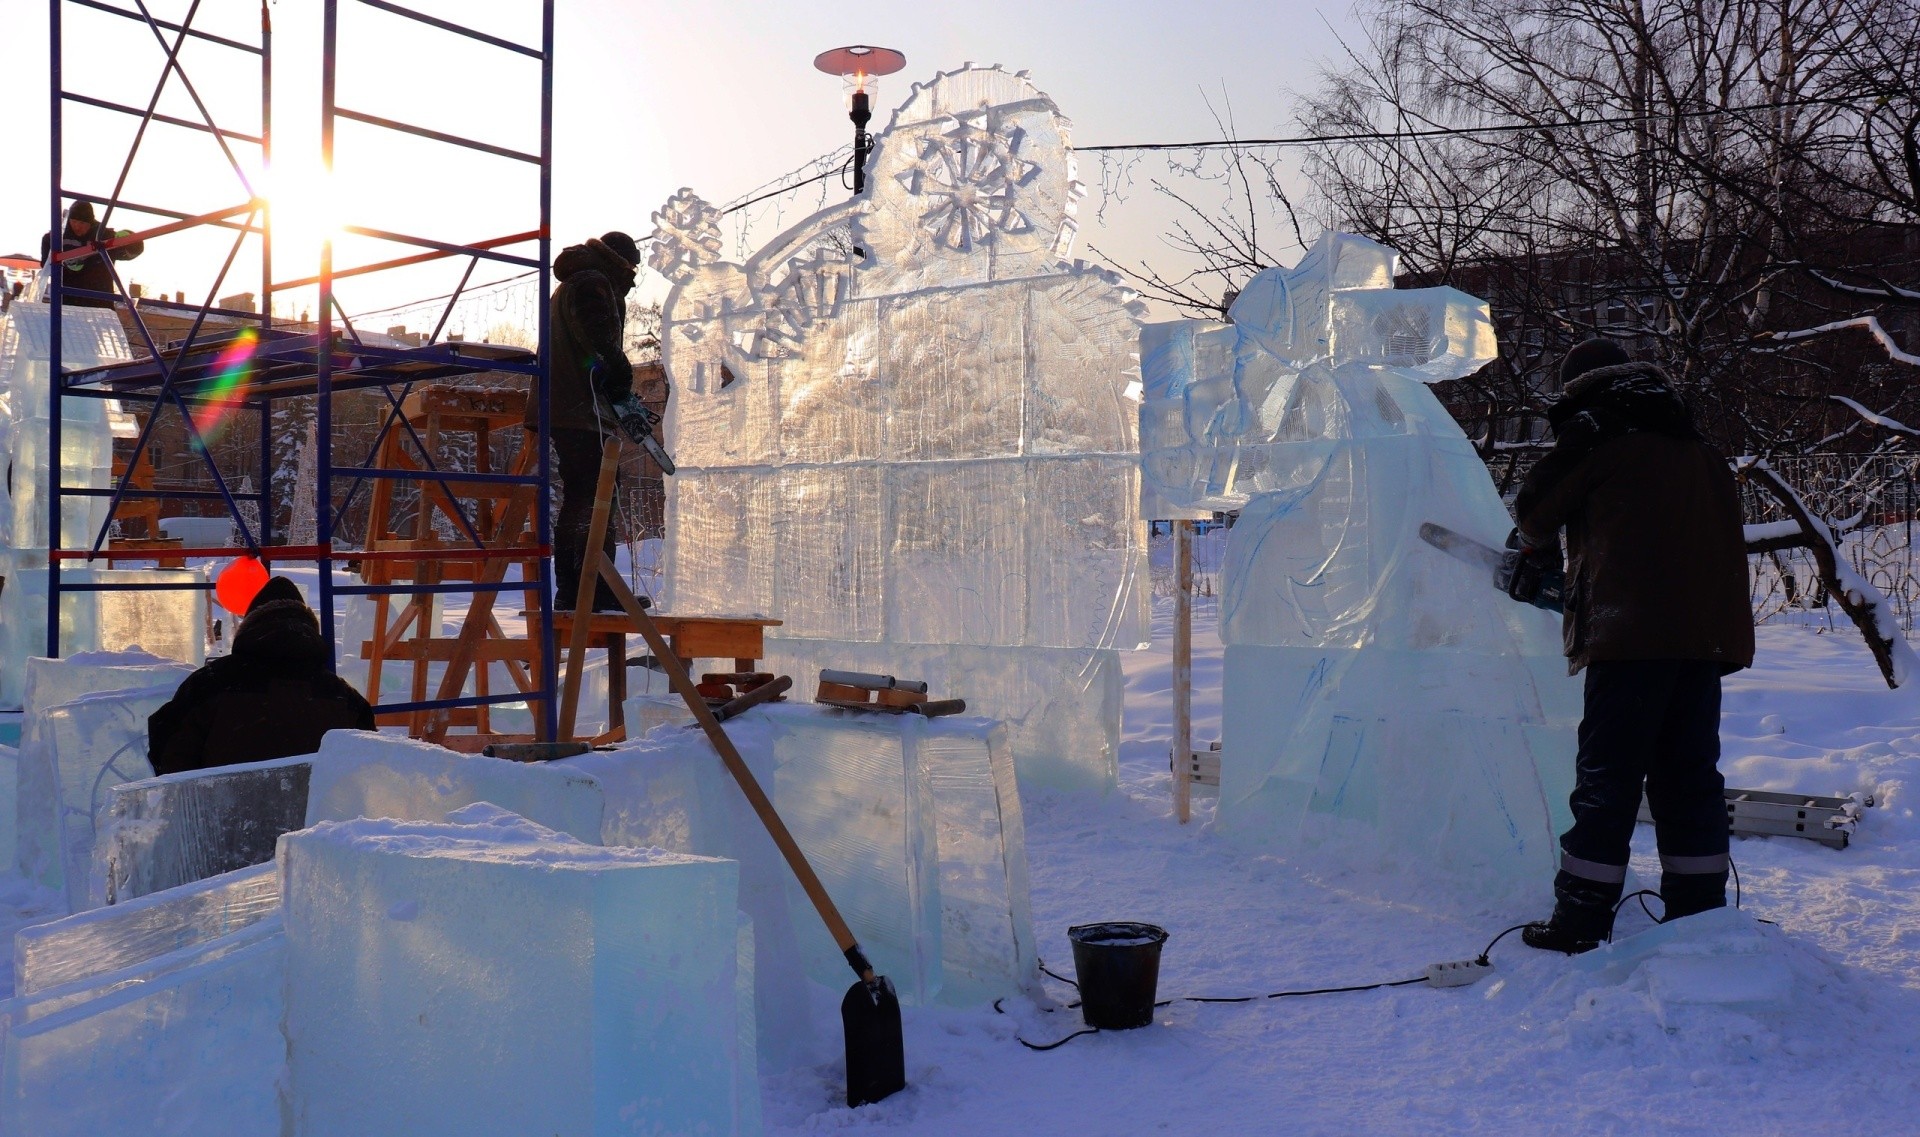 XXI talvifestivalin tapahtumat aletah tuiskukuušša Petroskoissa. 0+. Kuva: Giperboreja-festivalin VKontakte-ryhmä